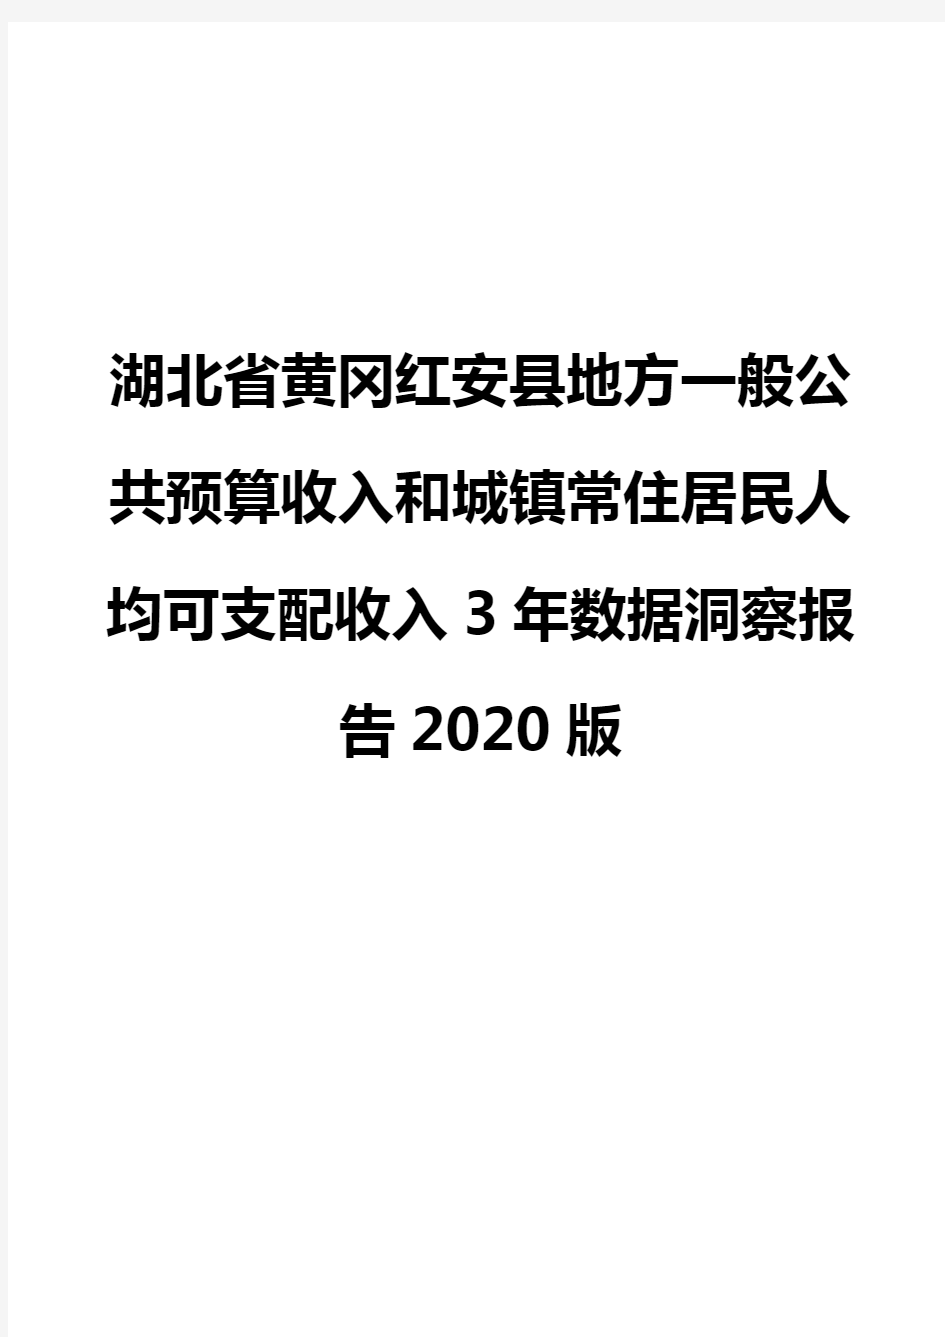 湖北省黄冈红安县地方一般公共预算收入和城镇常住居民人均可支配收入3年数据洞察报告2020版